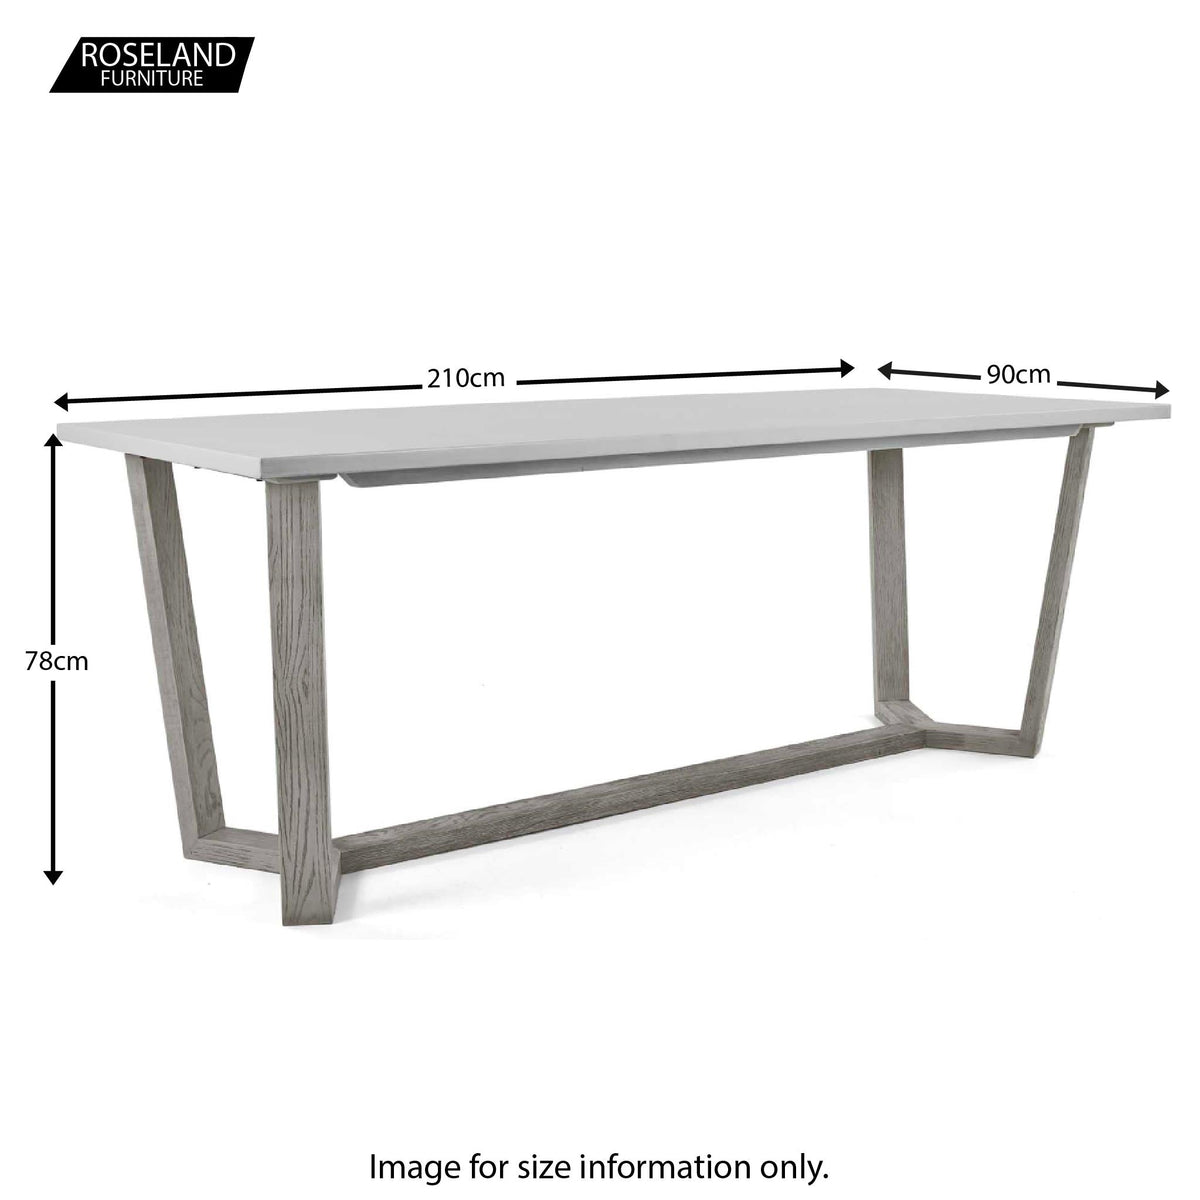 Epsom 210cm Rectangular Dining Table - Size Guide